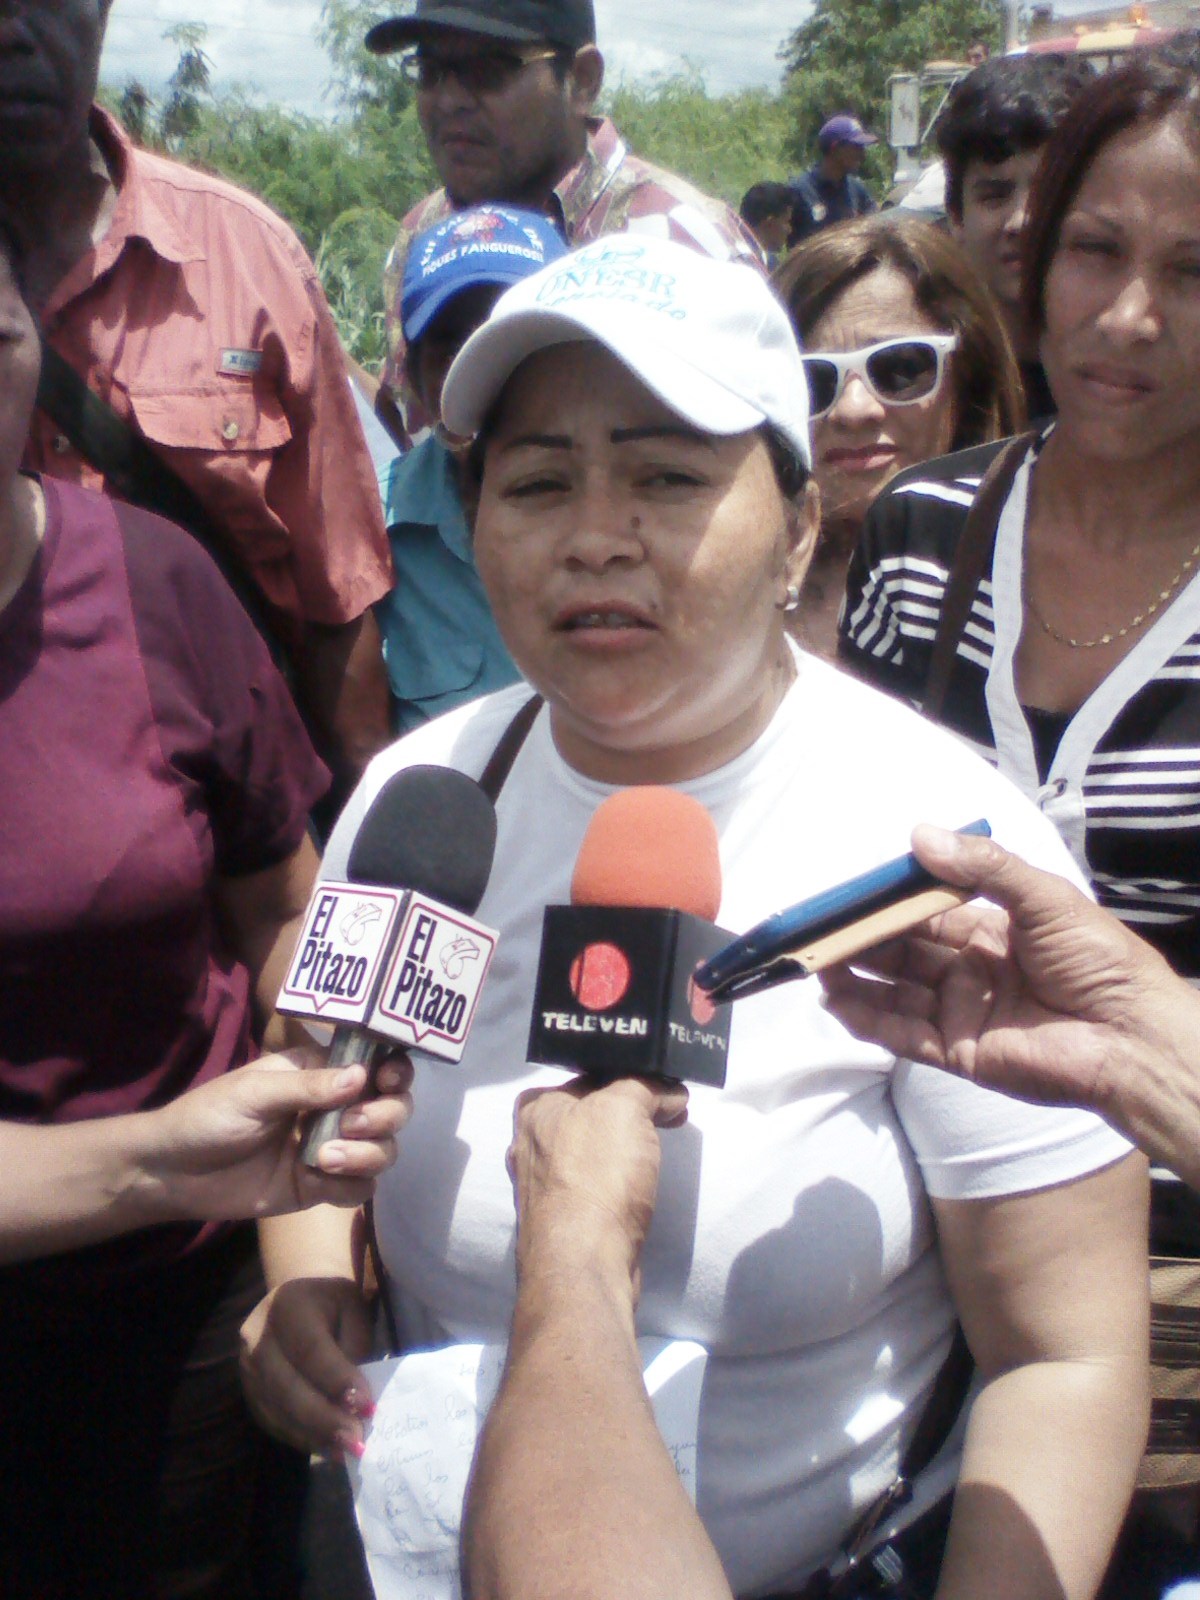 Iliana Sánchez (franela blanca) denunció que el presidente de Confagan William Teran se comprometió a entregar los insumos agrícolas y los mantiene engañados 